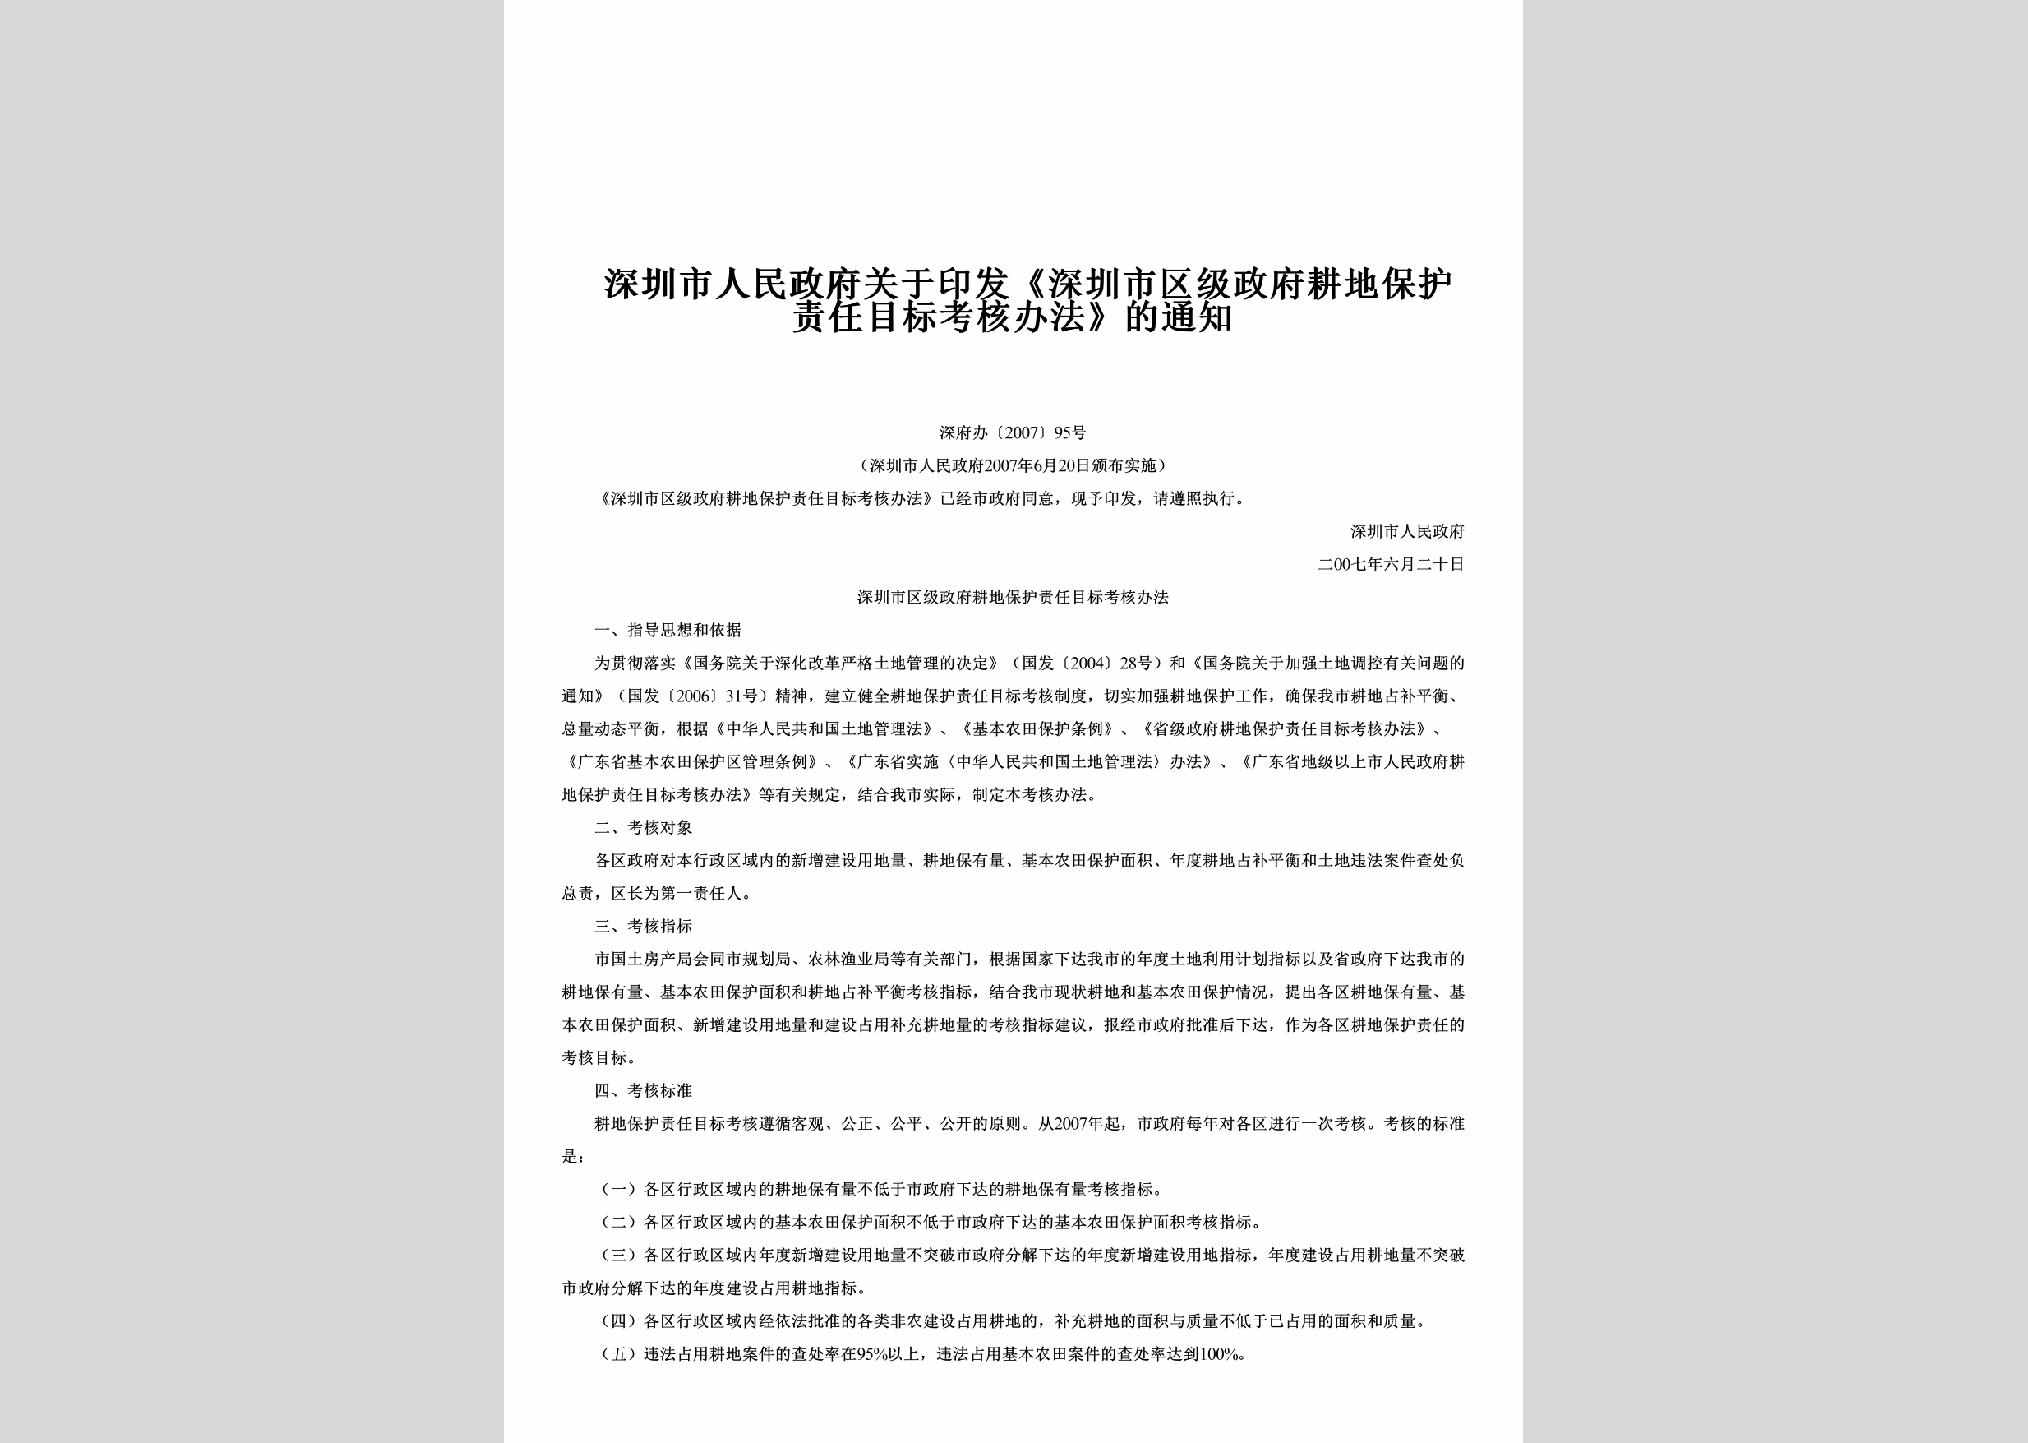 深府办[2007]95号：关于印发《深圳市区级政府耕地保护责任目标考核办法》的通知